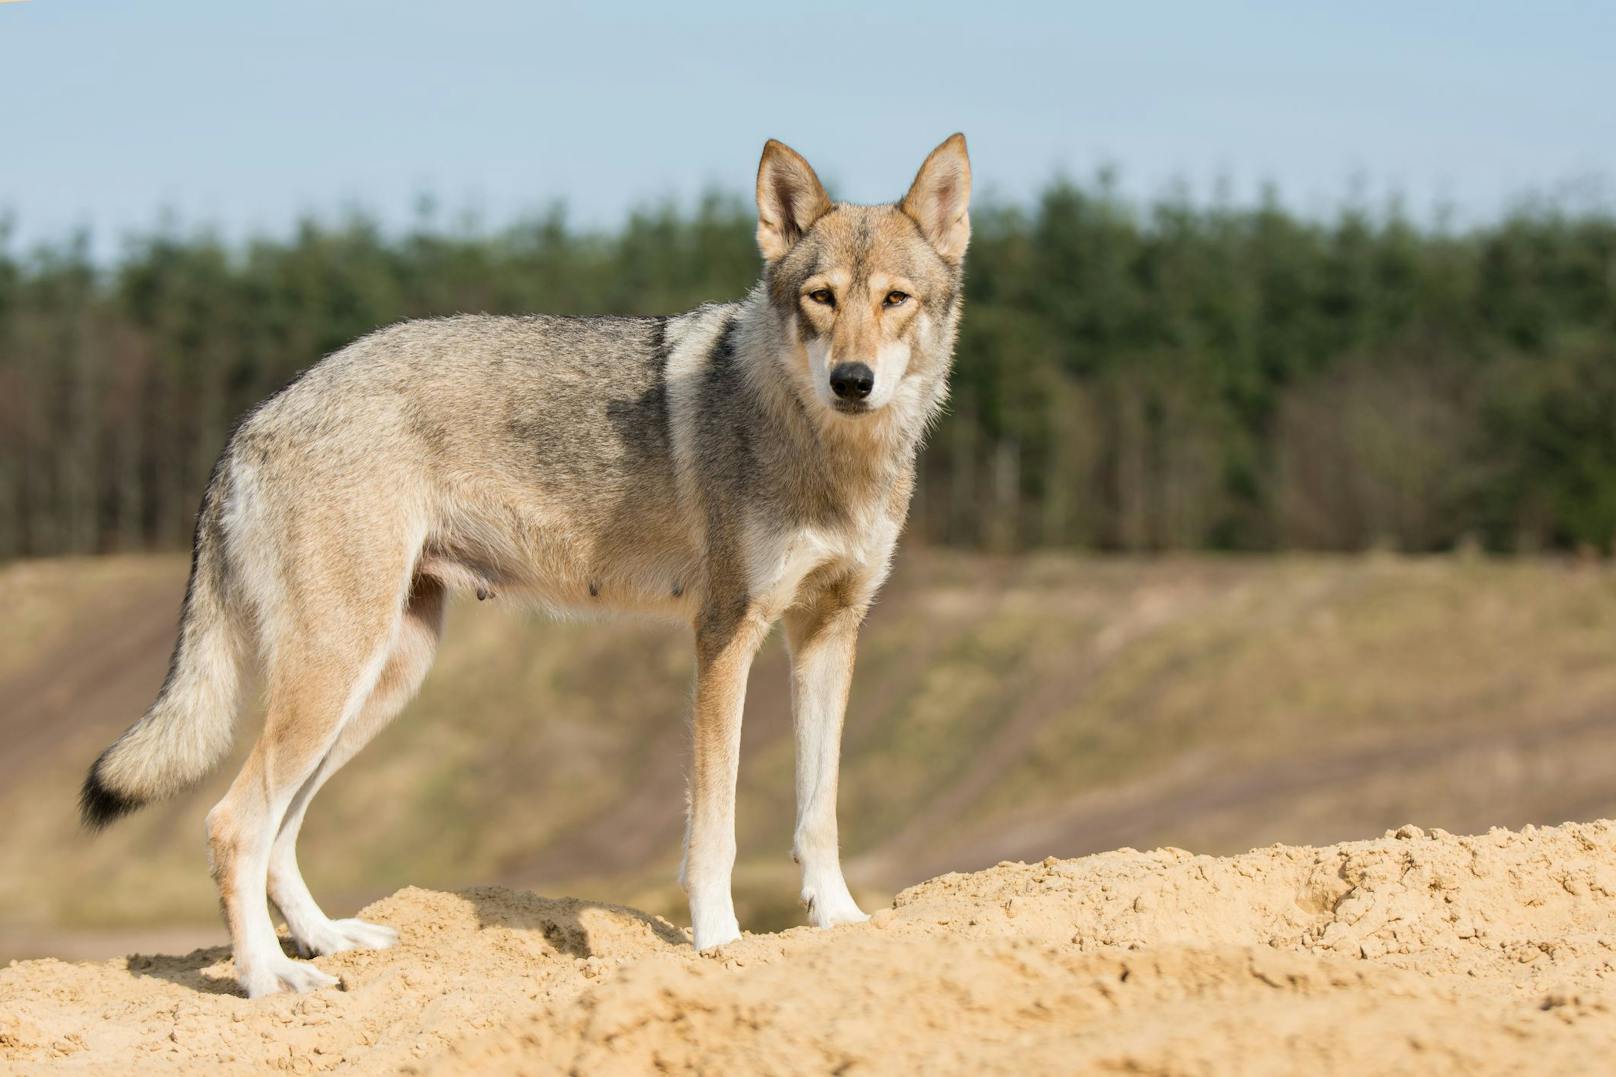 Der sogenannte "<strong>Tamaskan</strong>" ist eine vom FCI (Fédération Cynologique Internationale) NICHT anerkannte Hunderasse aus Finnland, die aus dem Motiv herausgezüchtet wurde, dem Wolf so ähnlich wie möglich zu sein. 